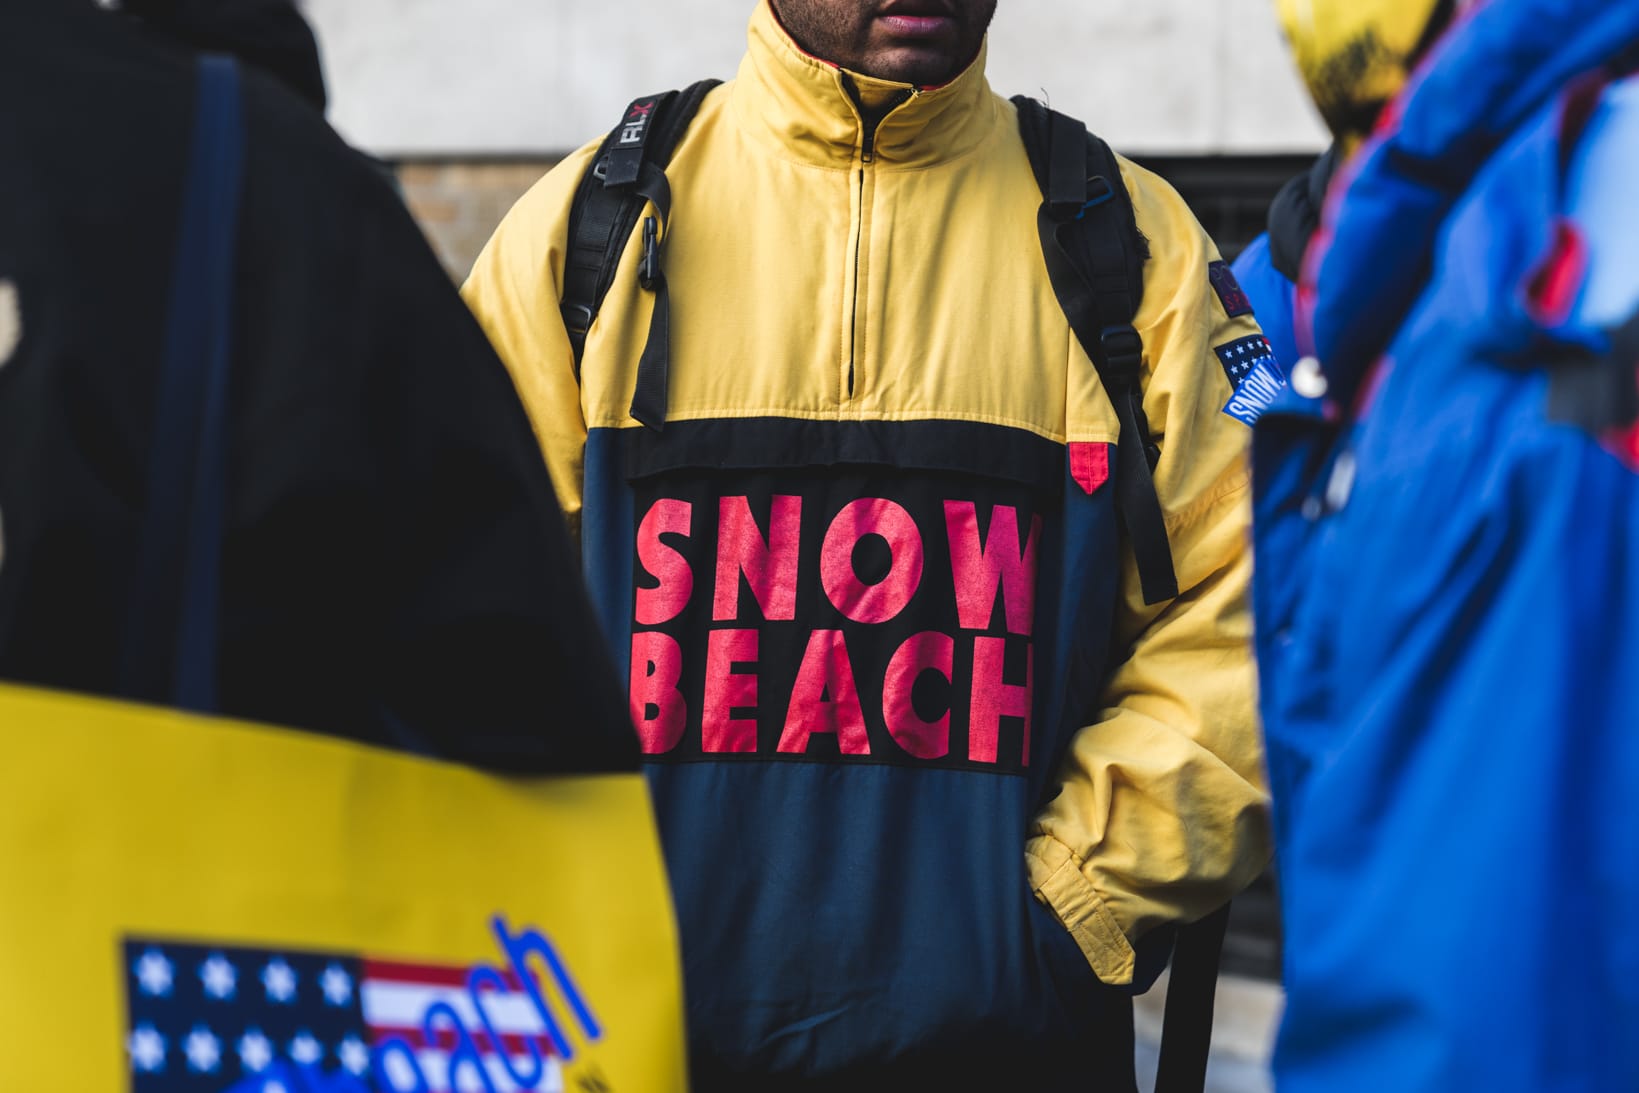 ralph lauren snow beach pullover